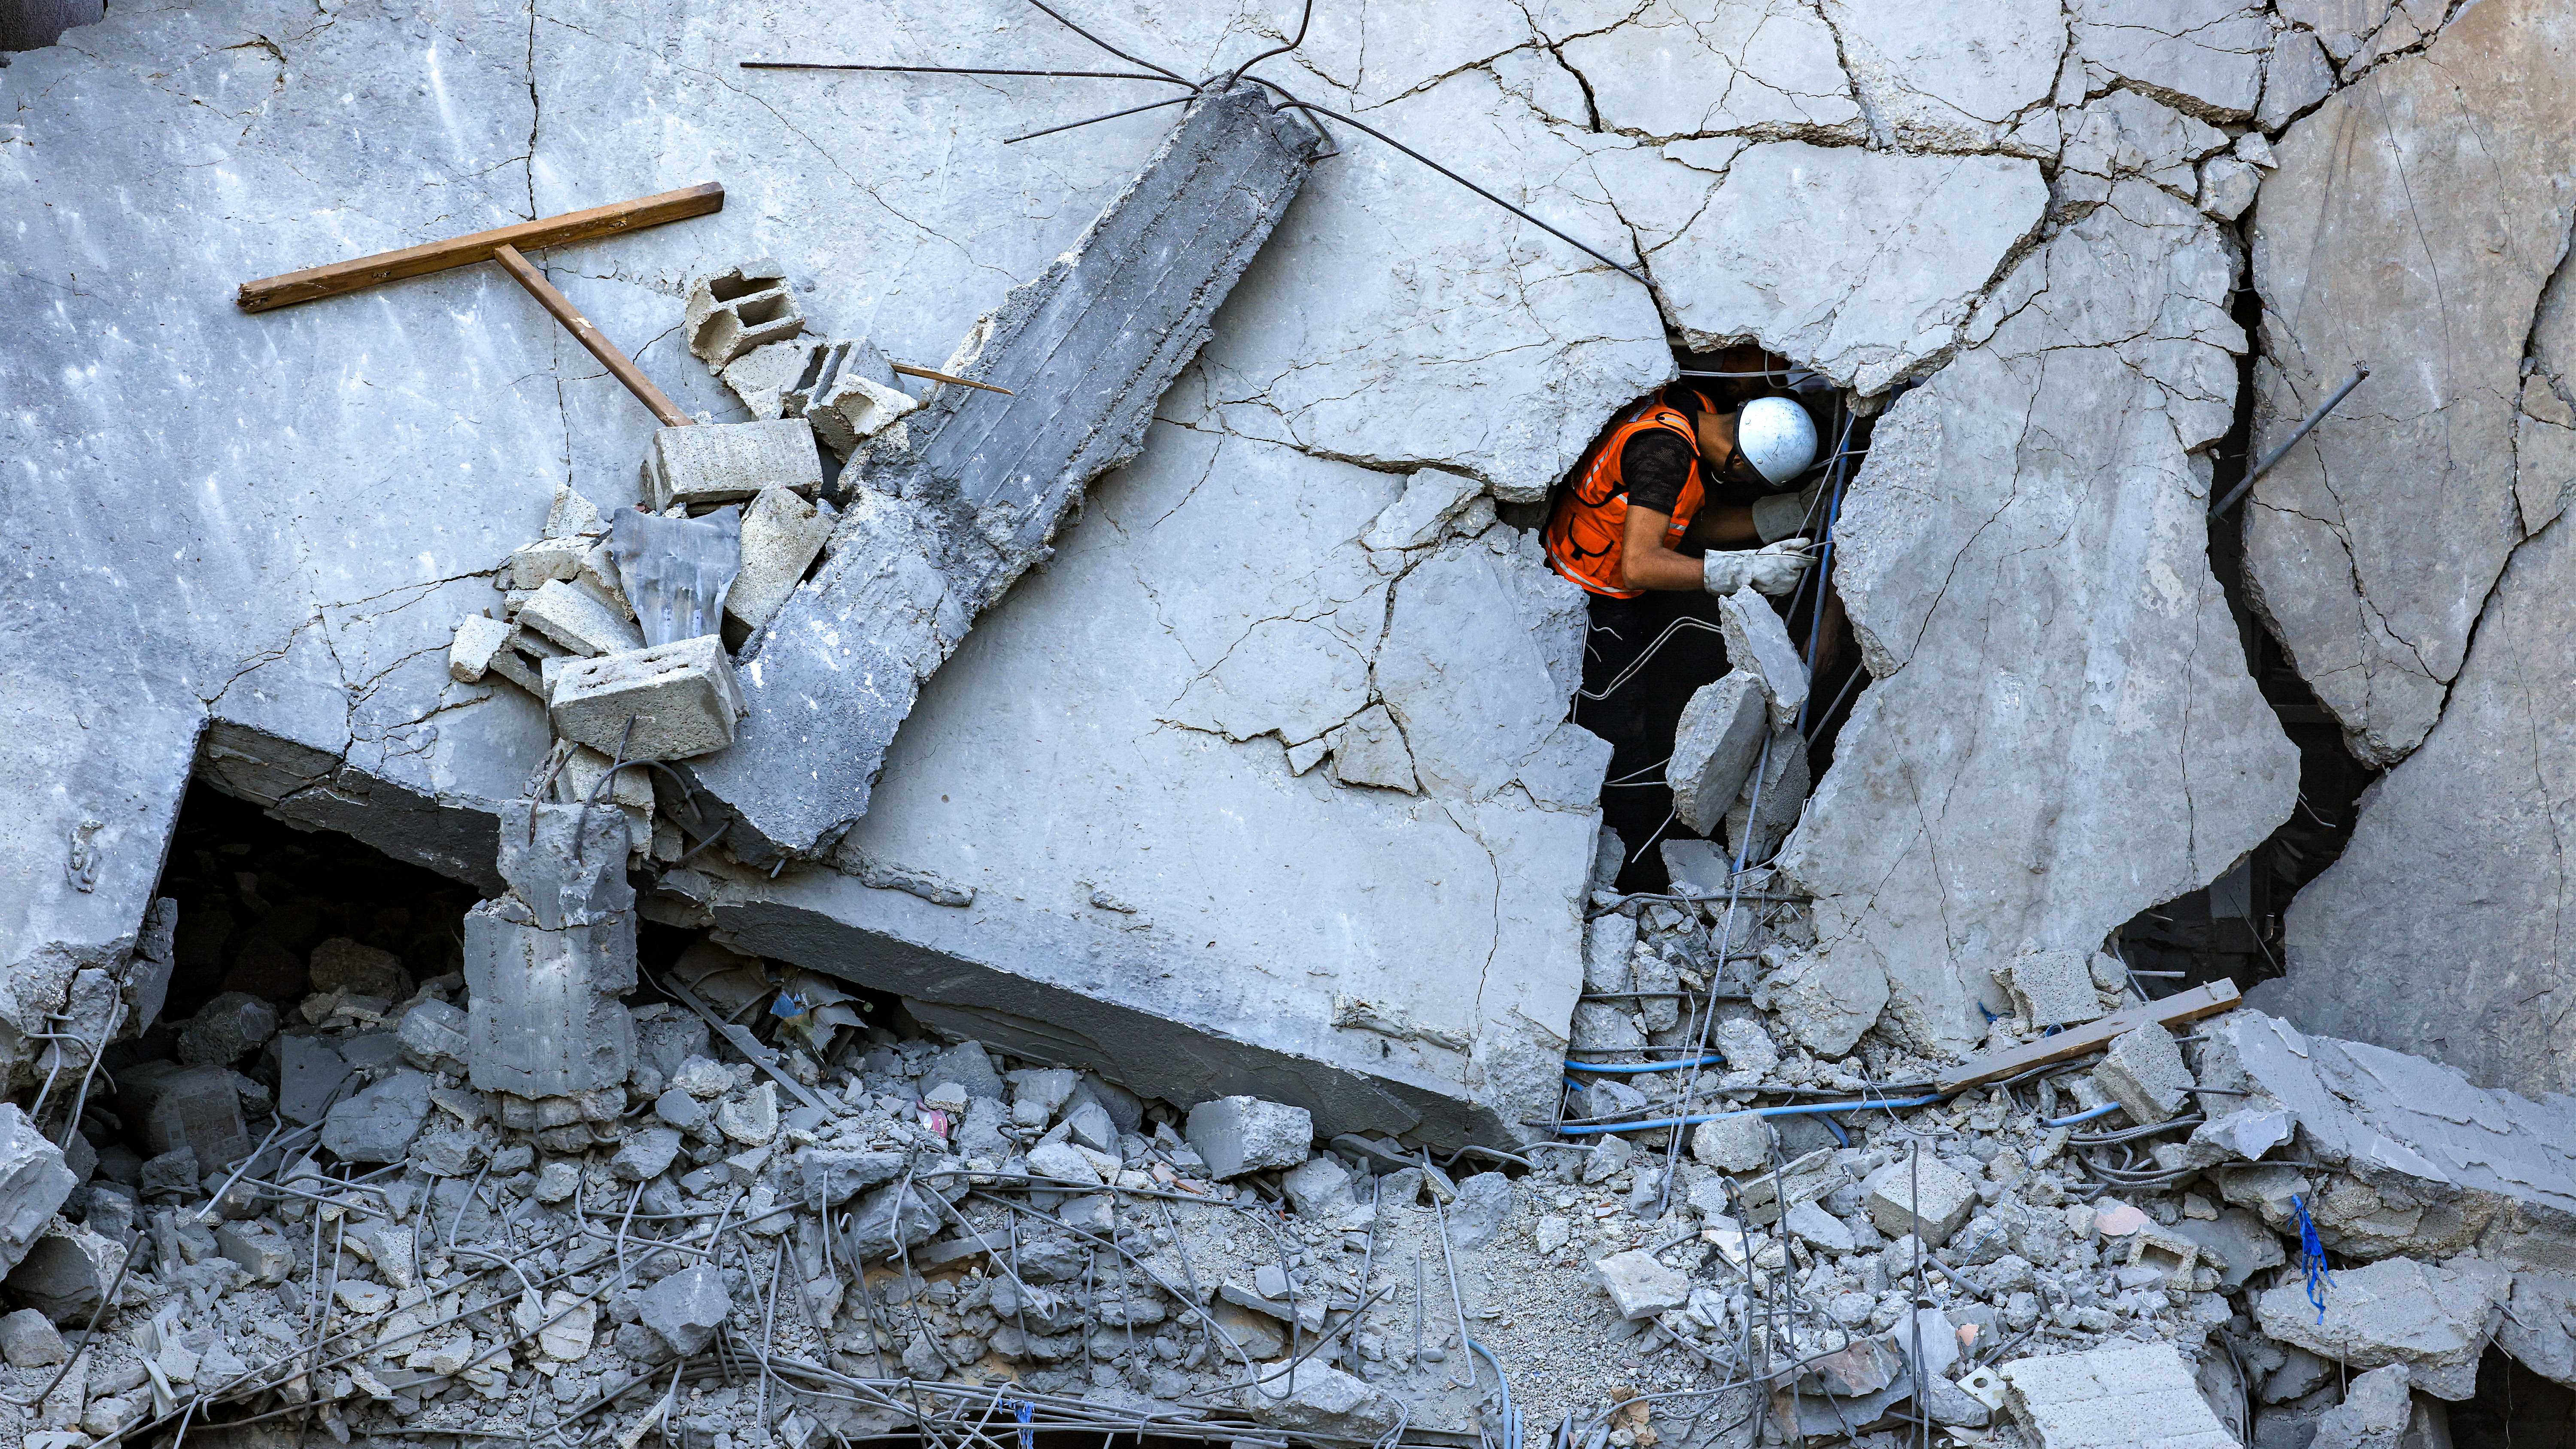 عنصر في الدفاع المدني الفلسطيني في خان يونس يمر من خلال شقّ في مبنى انهار نتيجة القصف الإسرائيلي. (أ ف ب)